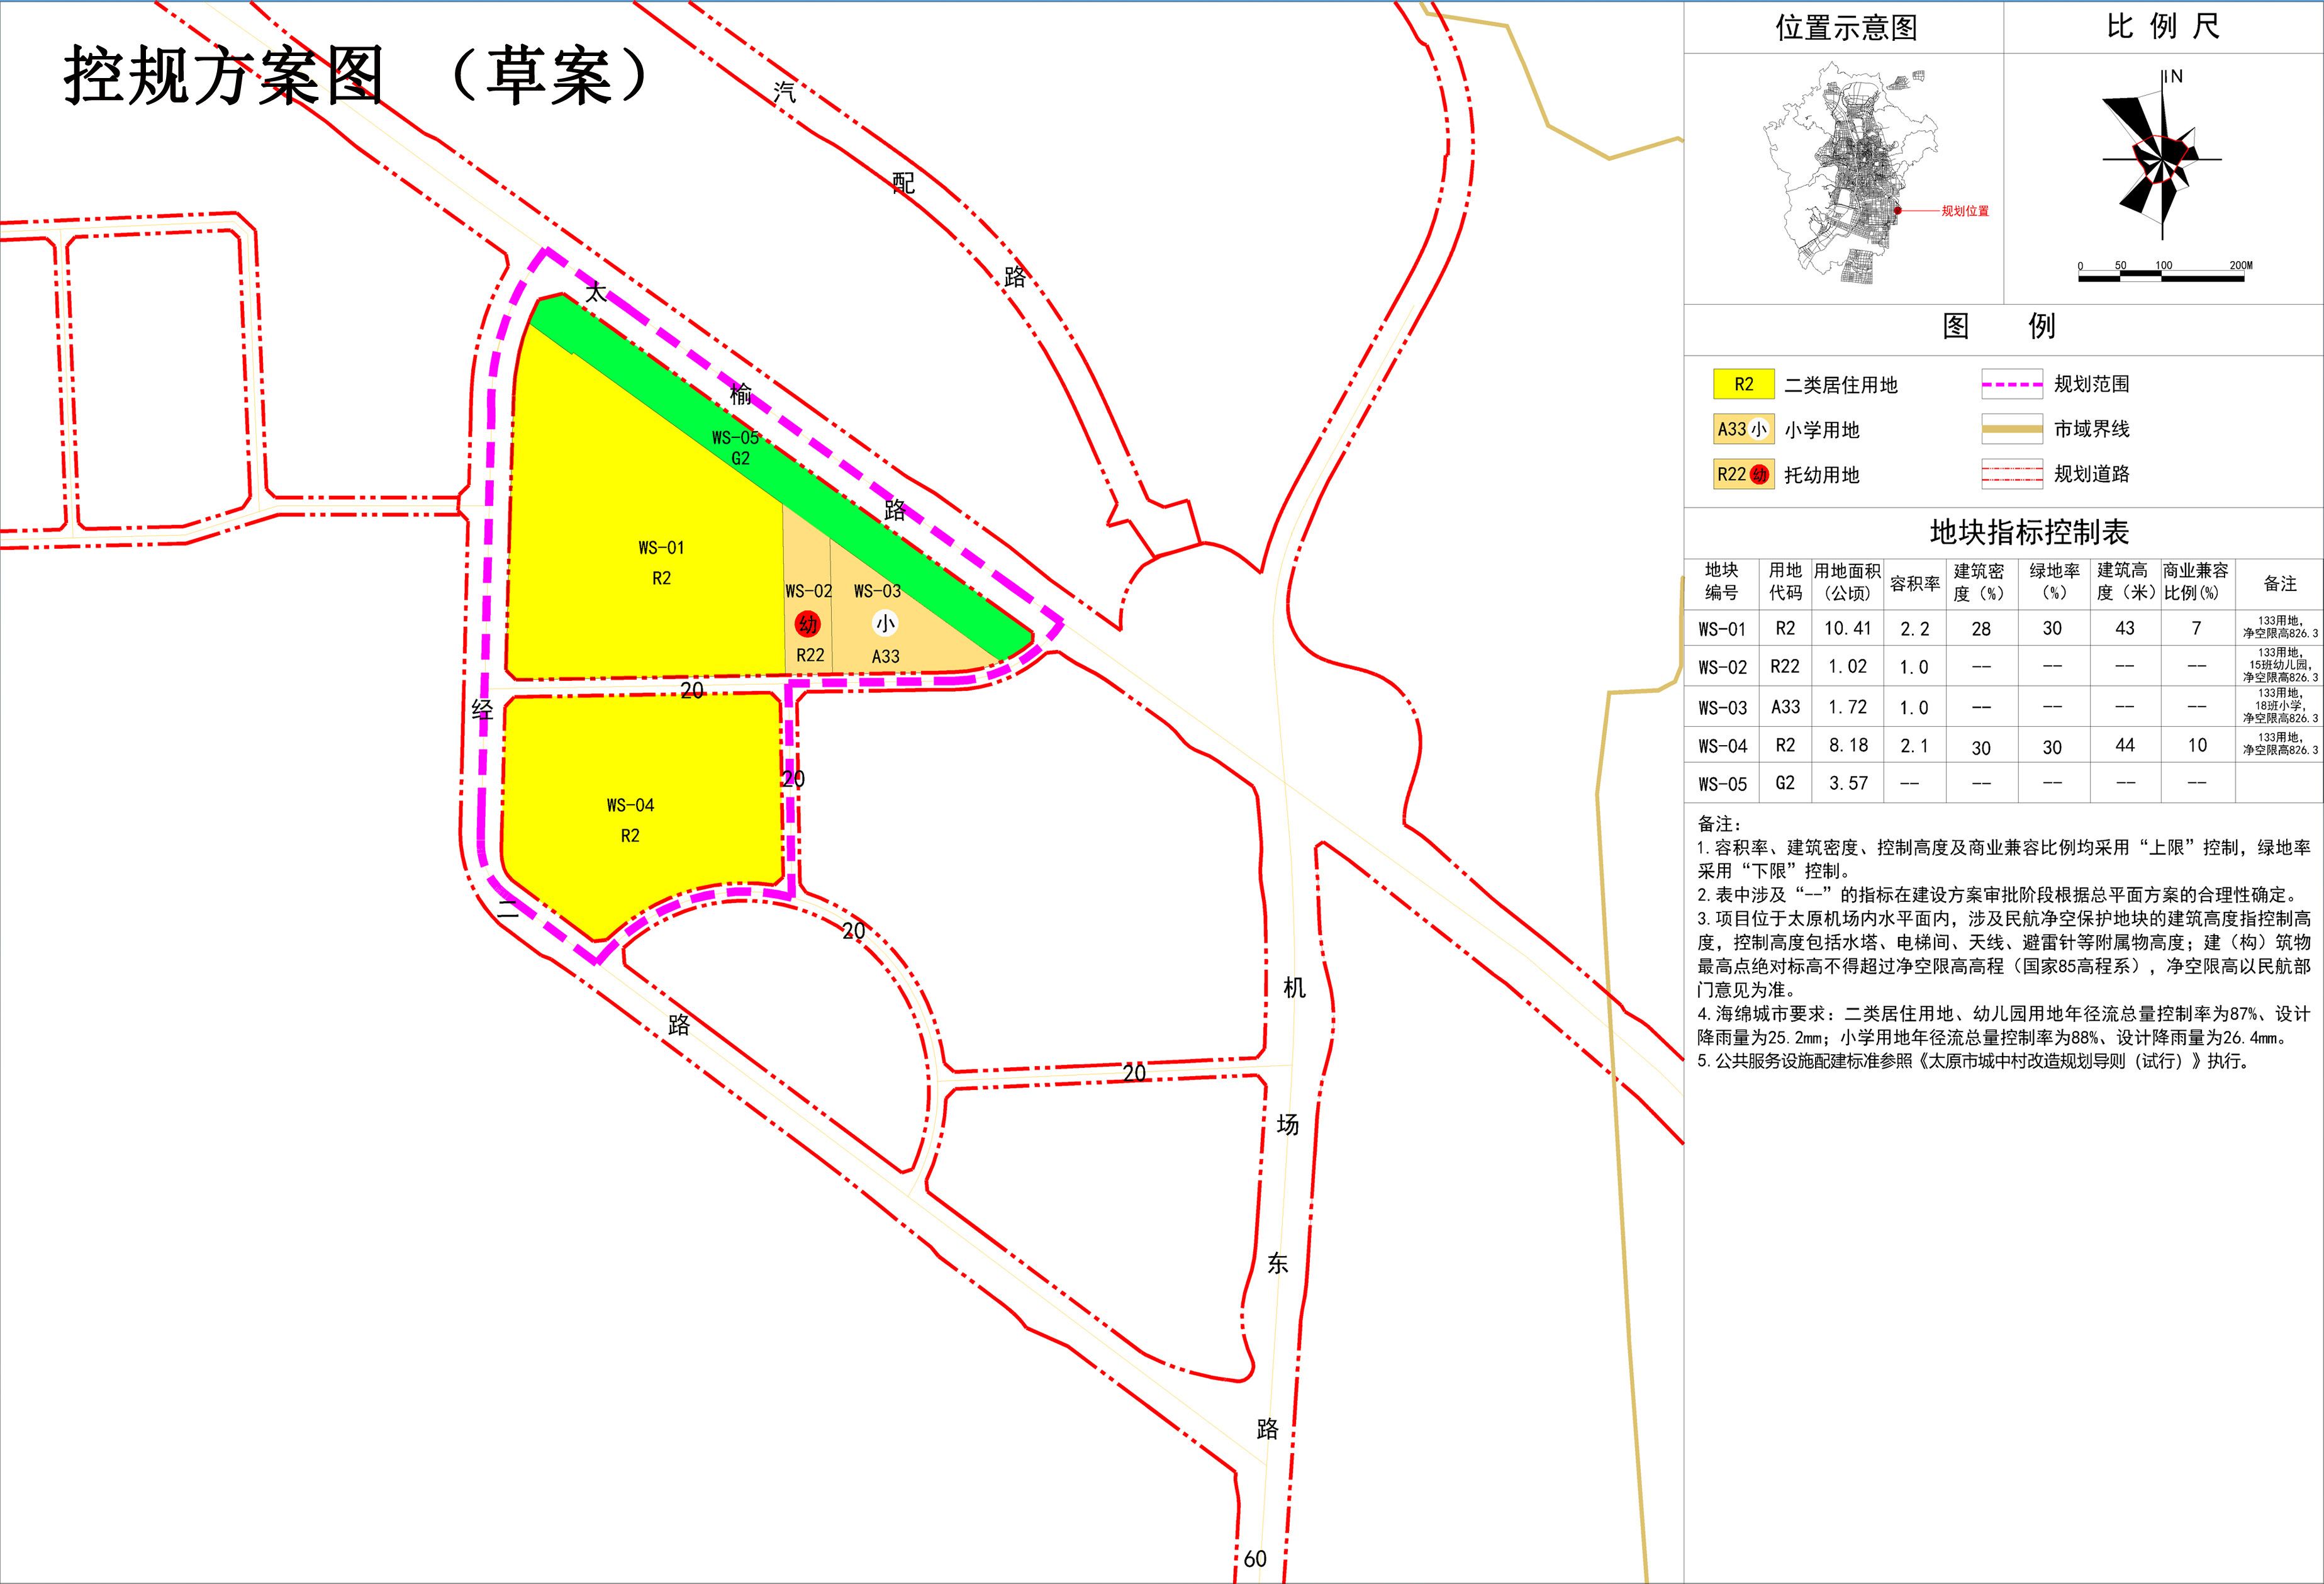 规划总用地30.82公顷 小店区武宿村城改控规方案公示